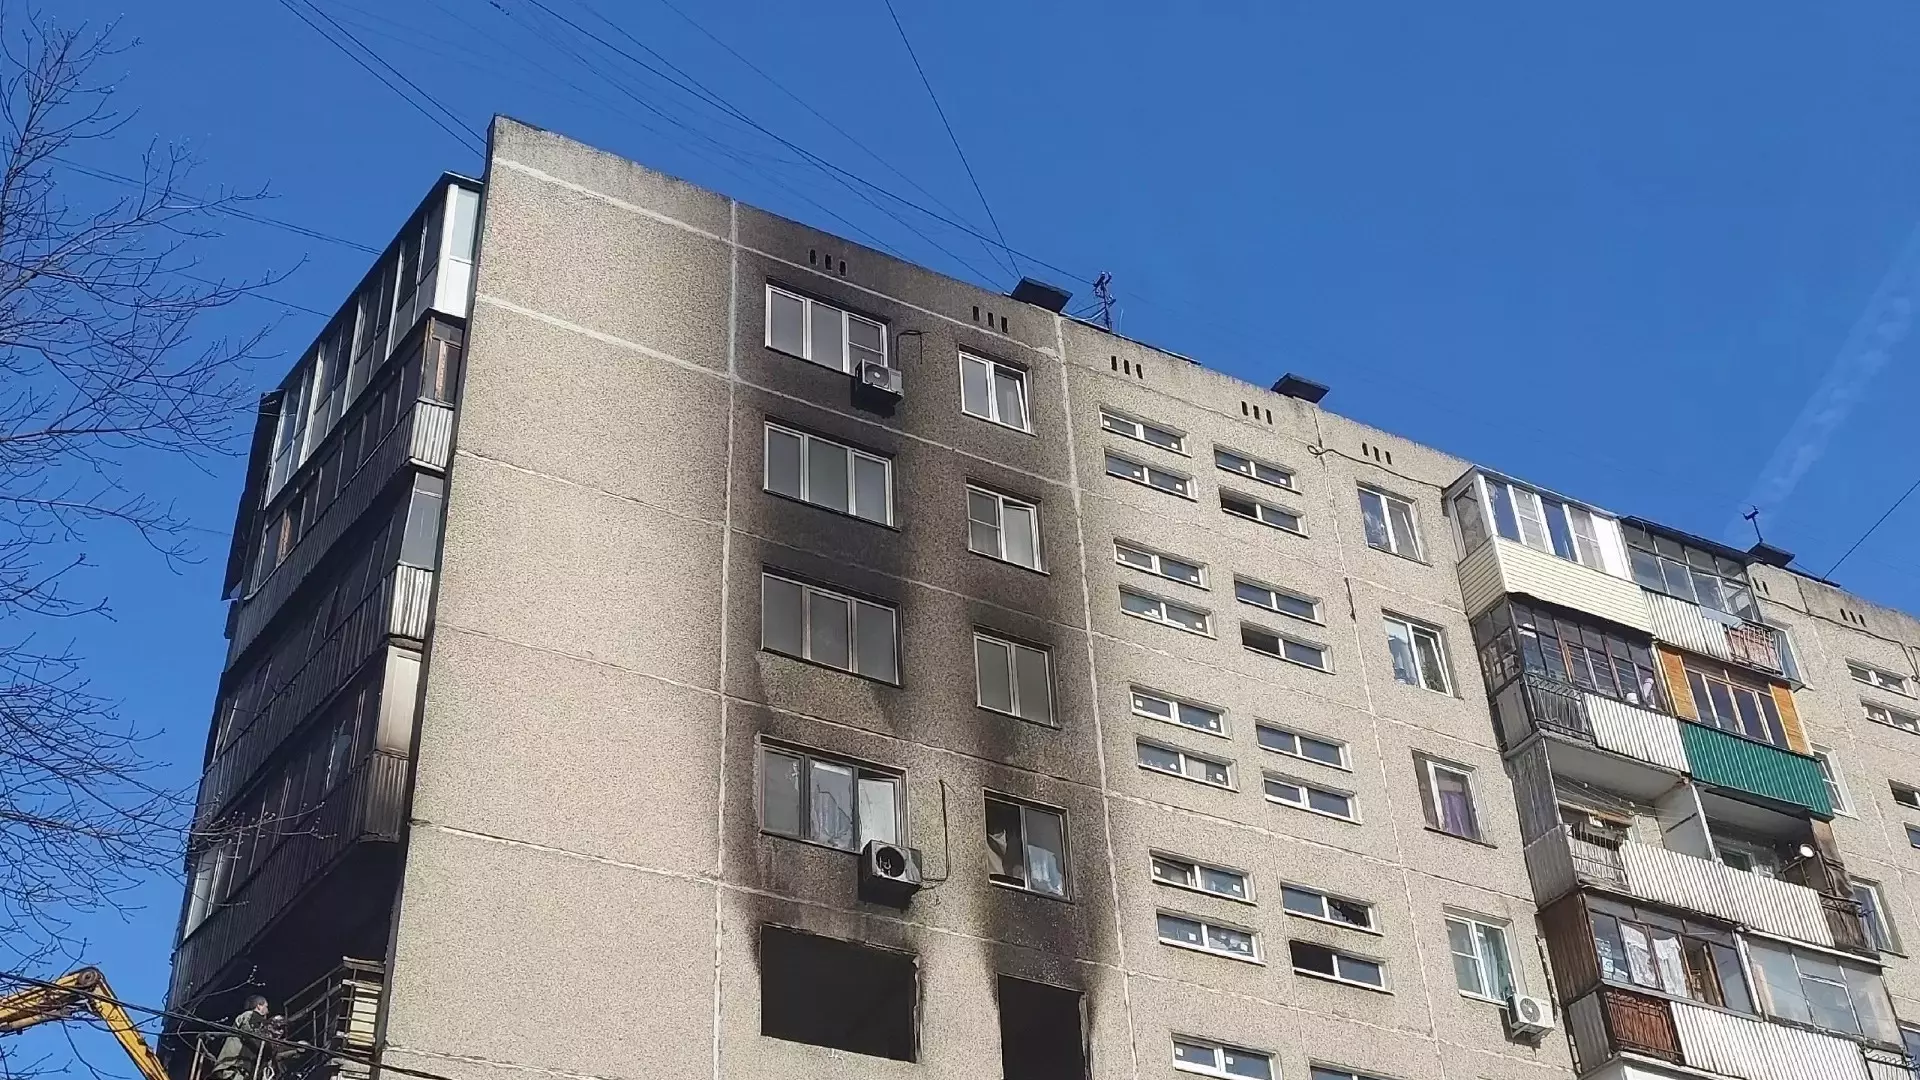 Около трех млн рублей выплатили жильцам дома на Фучика после взрыва